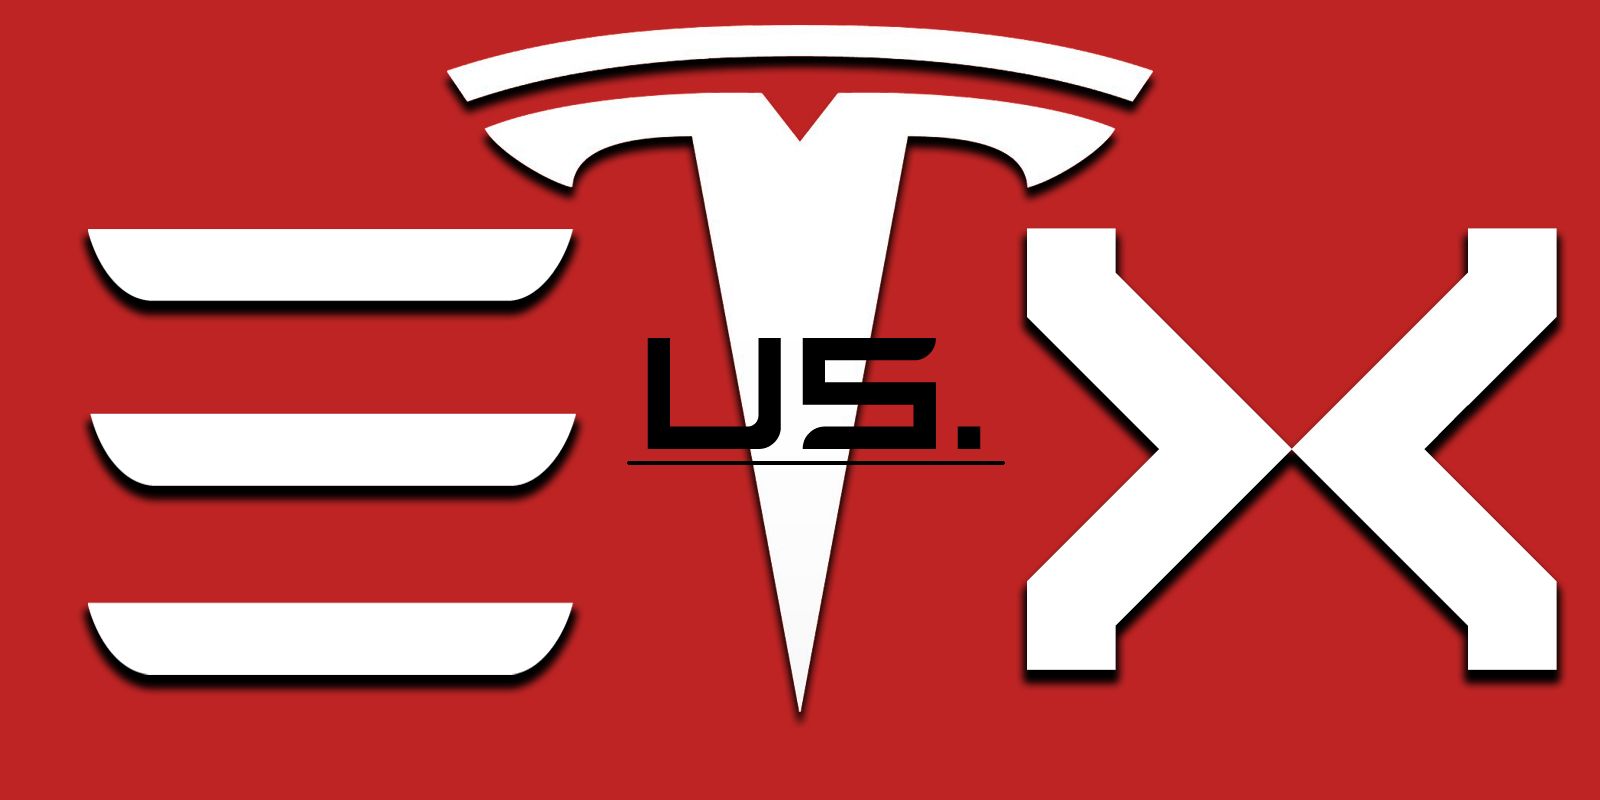 Tesla 3 logo X logo